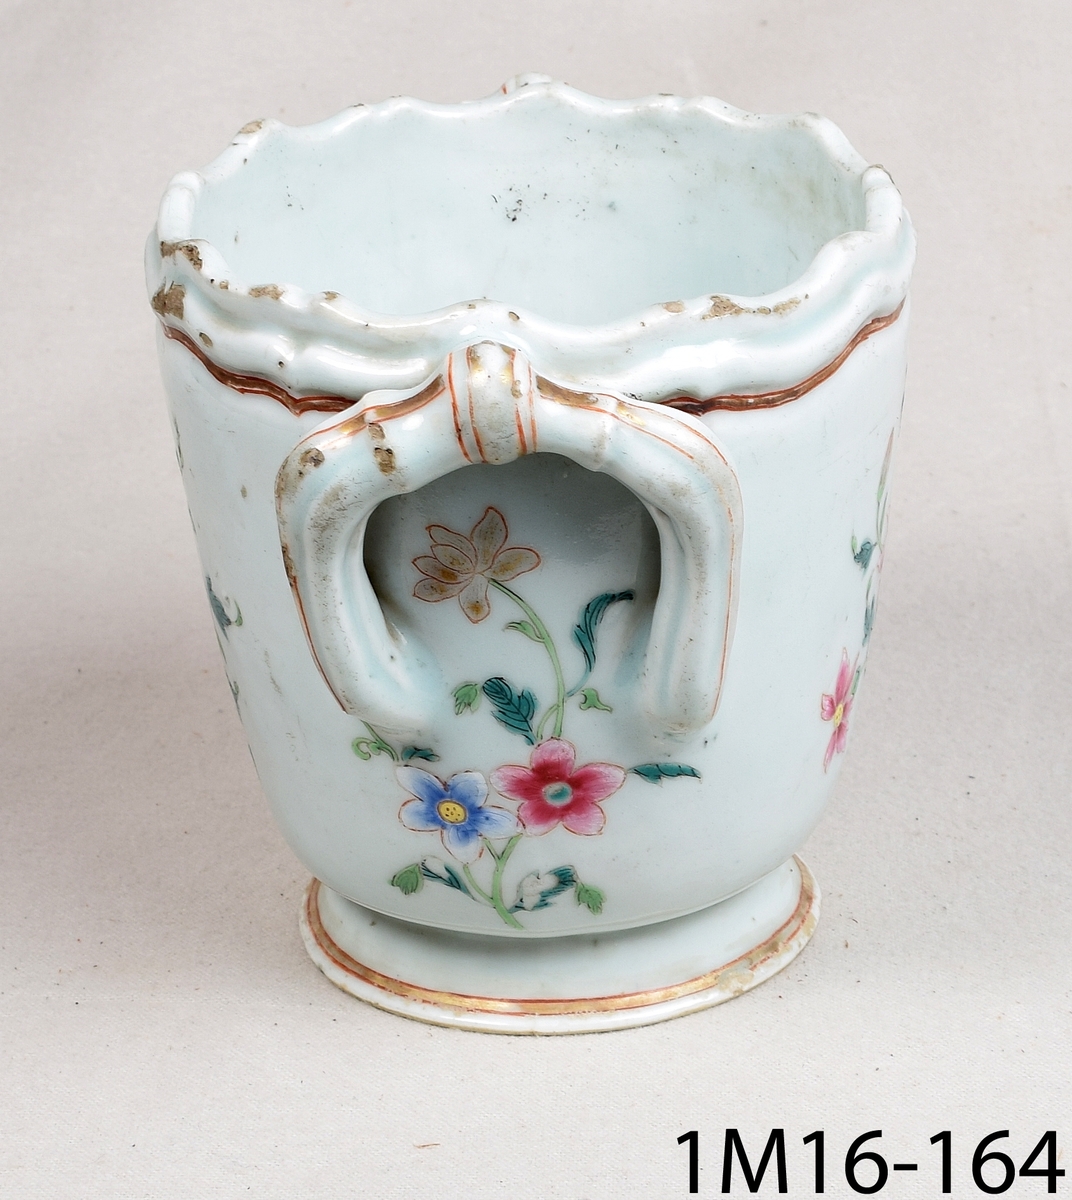 Rund kruka av keramik med ljusblå glasyr och handmålad blomdekor i många färger och guld. Krukan har två hänklar i överkant och en vågformad kant.